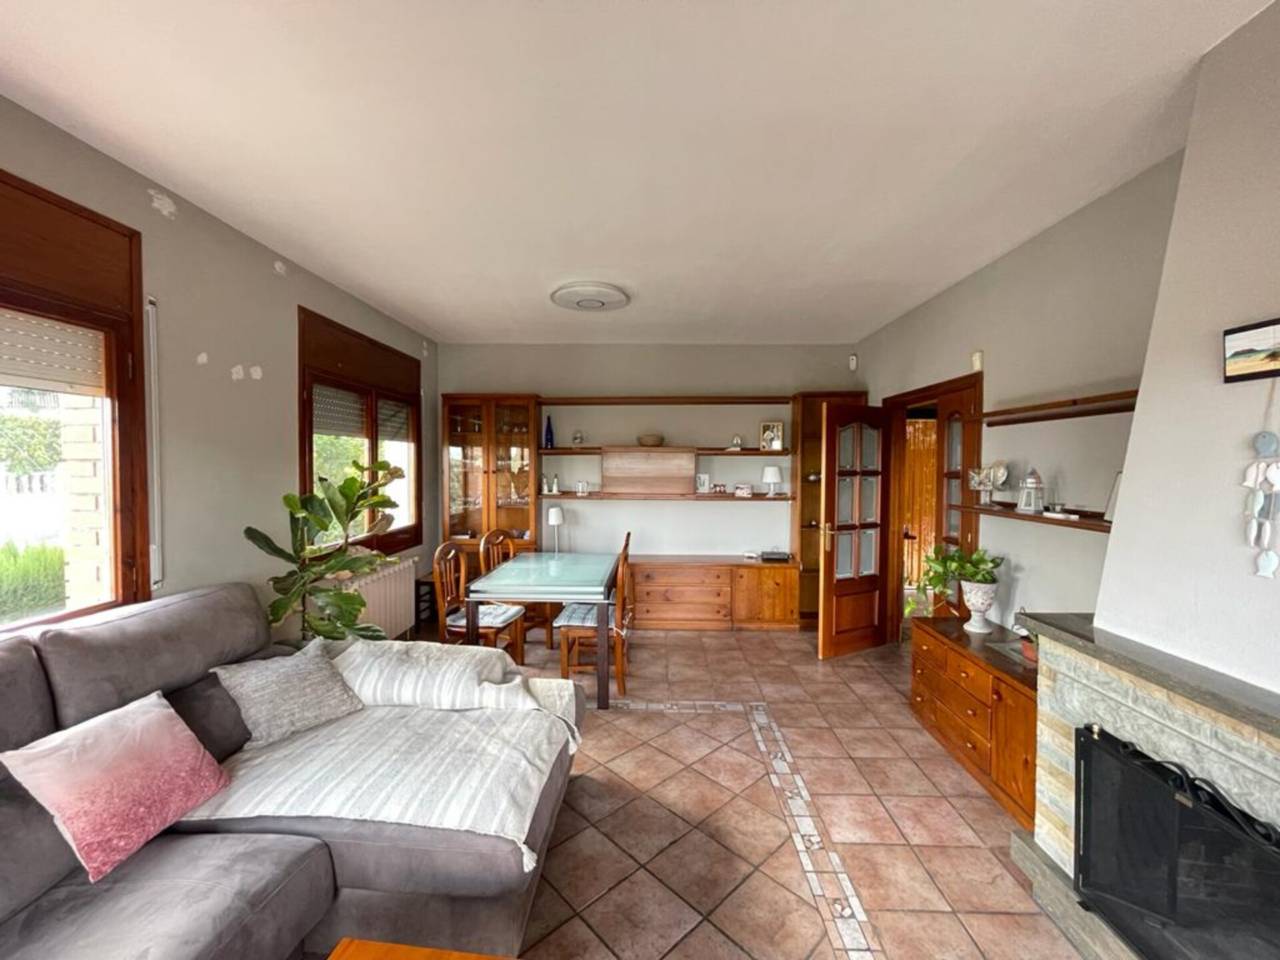 House for sale in Caldes de Montbui